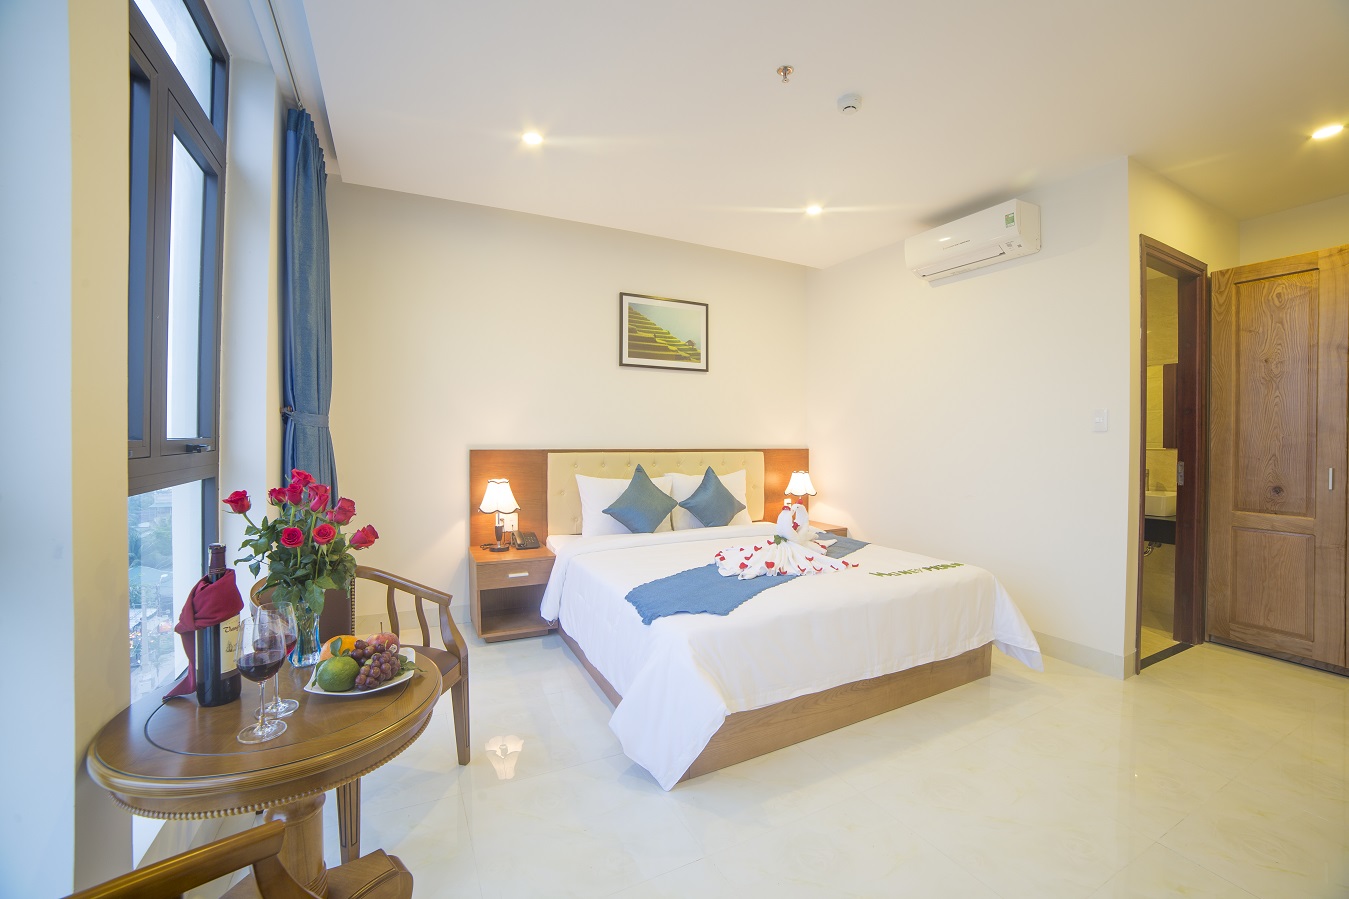 Phòng ngủ tại khách sạn Toàn Thắng 3 Sao Đà Nẵng